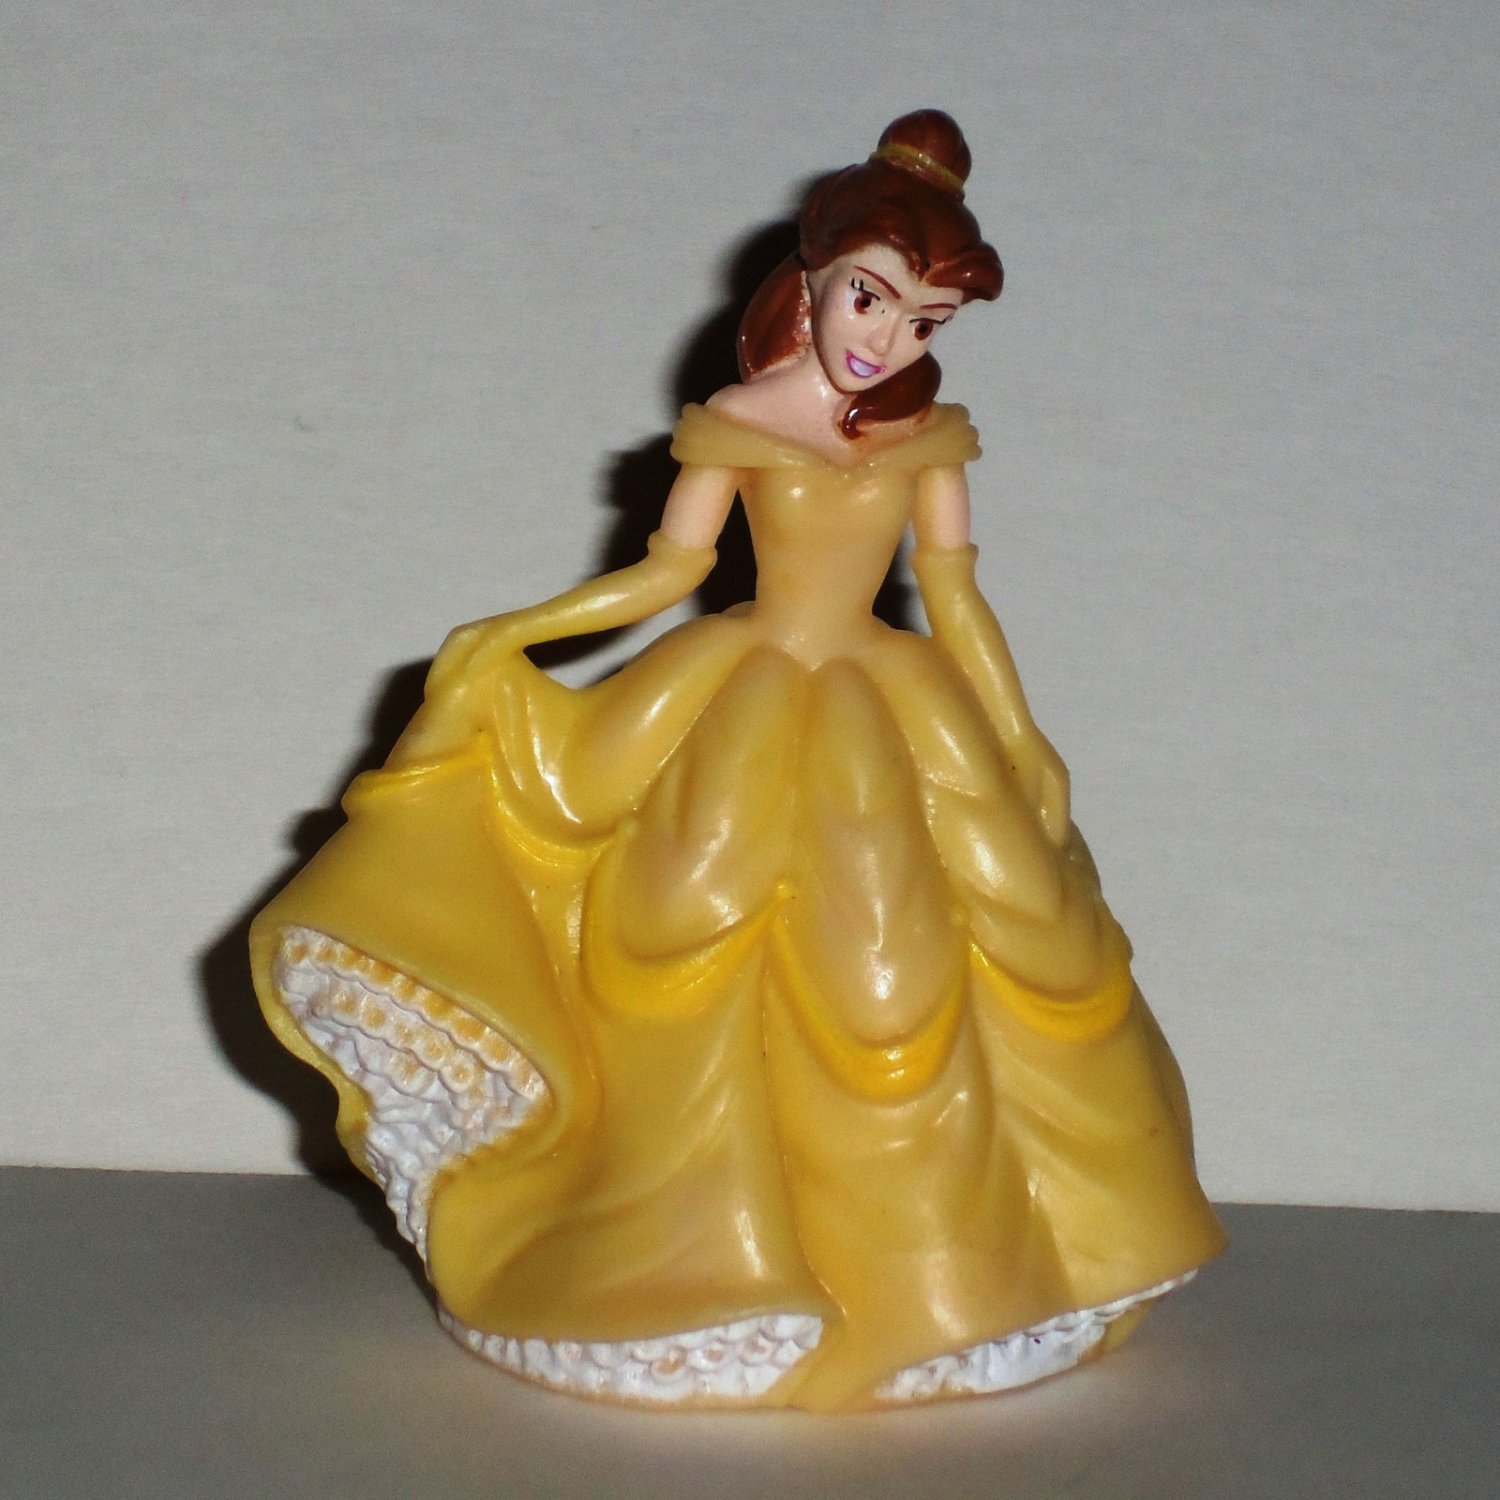 Details about   3" Belle Decopac PVC Plastic Disney Princess Figure Toy Beauty & The Beast